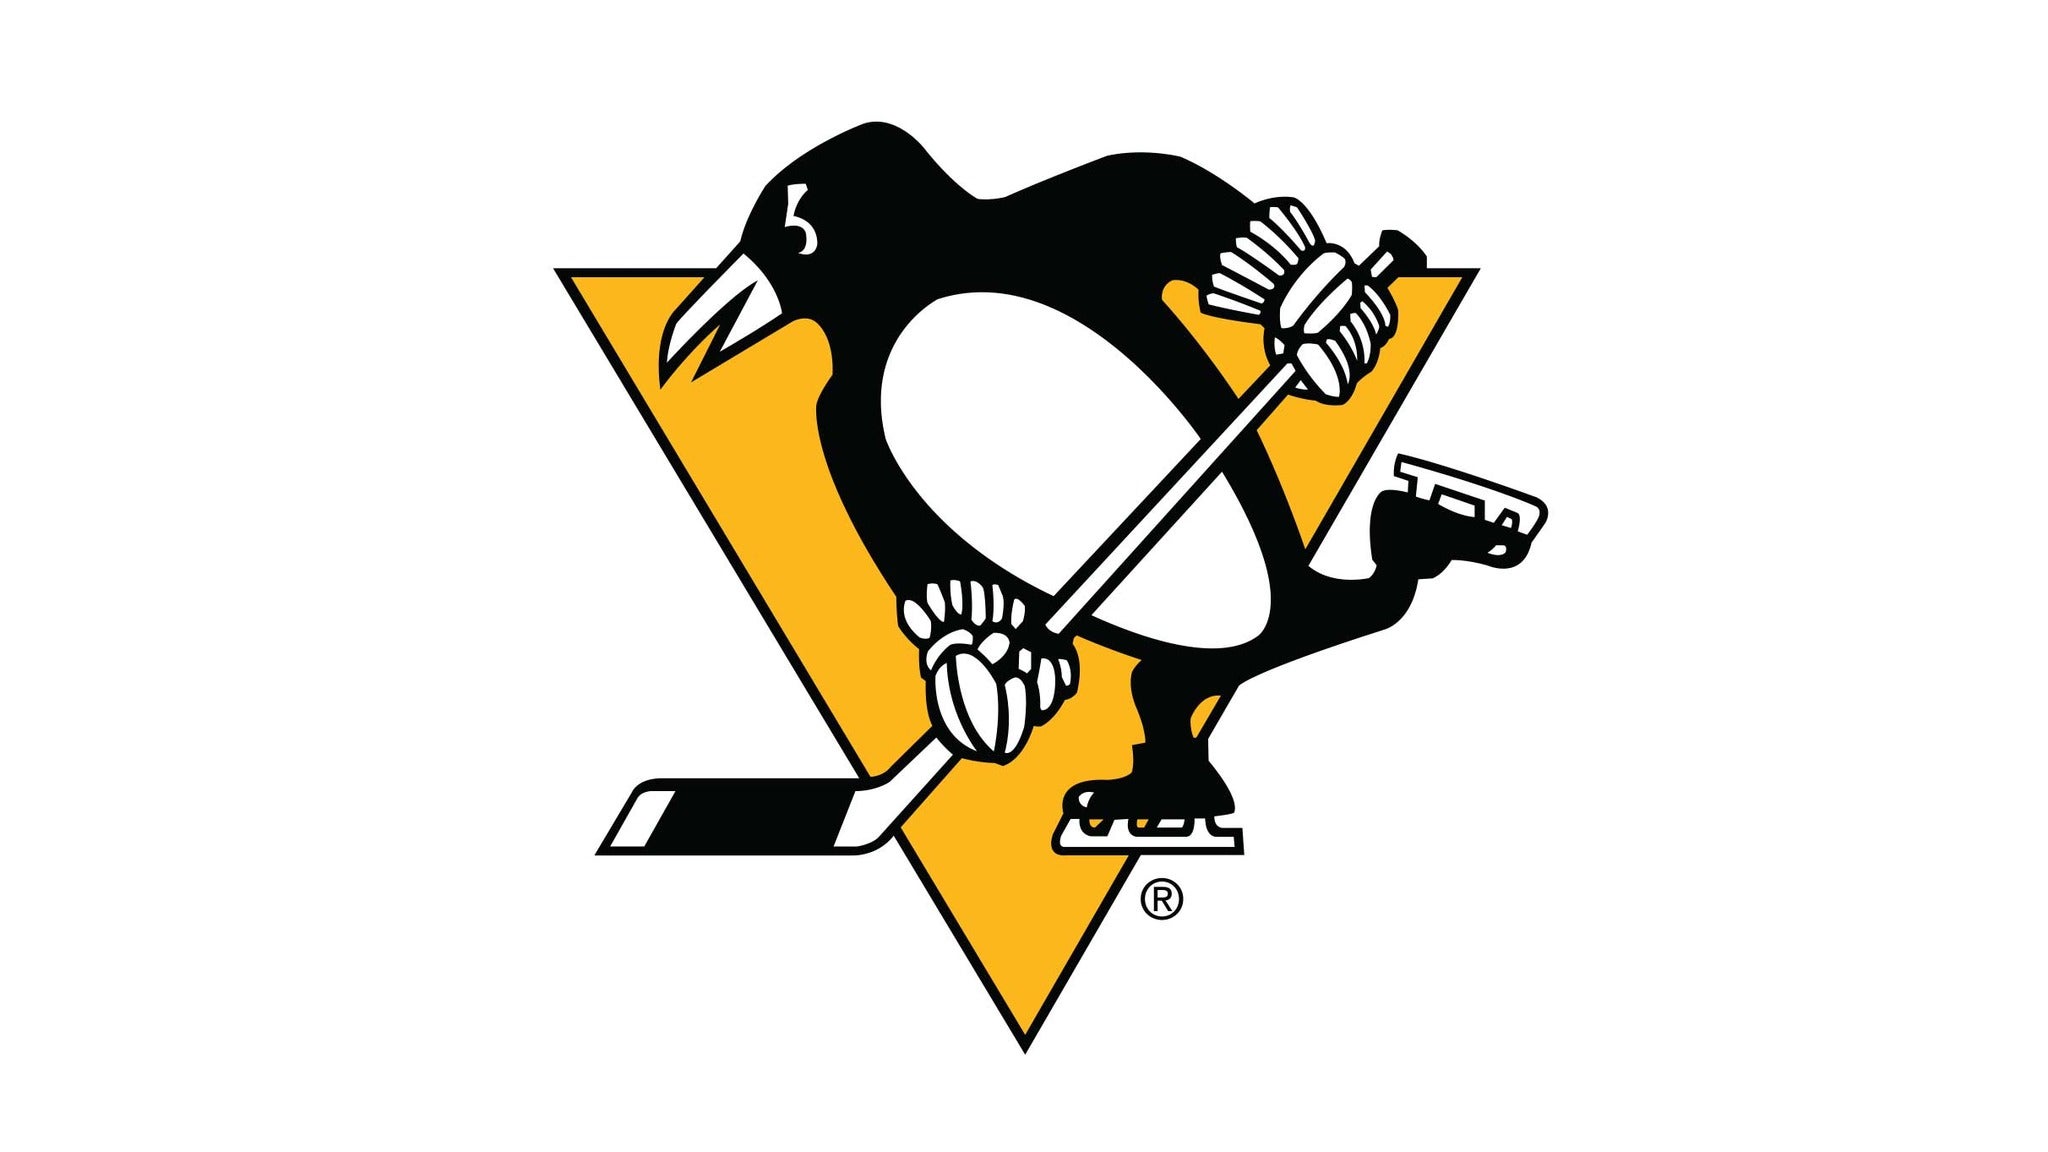 Pittsburgh Penguins vs. Los Angeles Kings